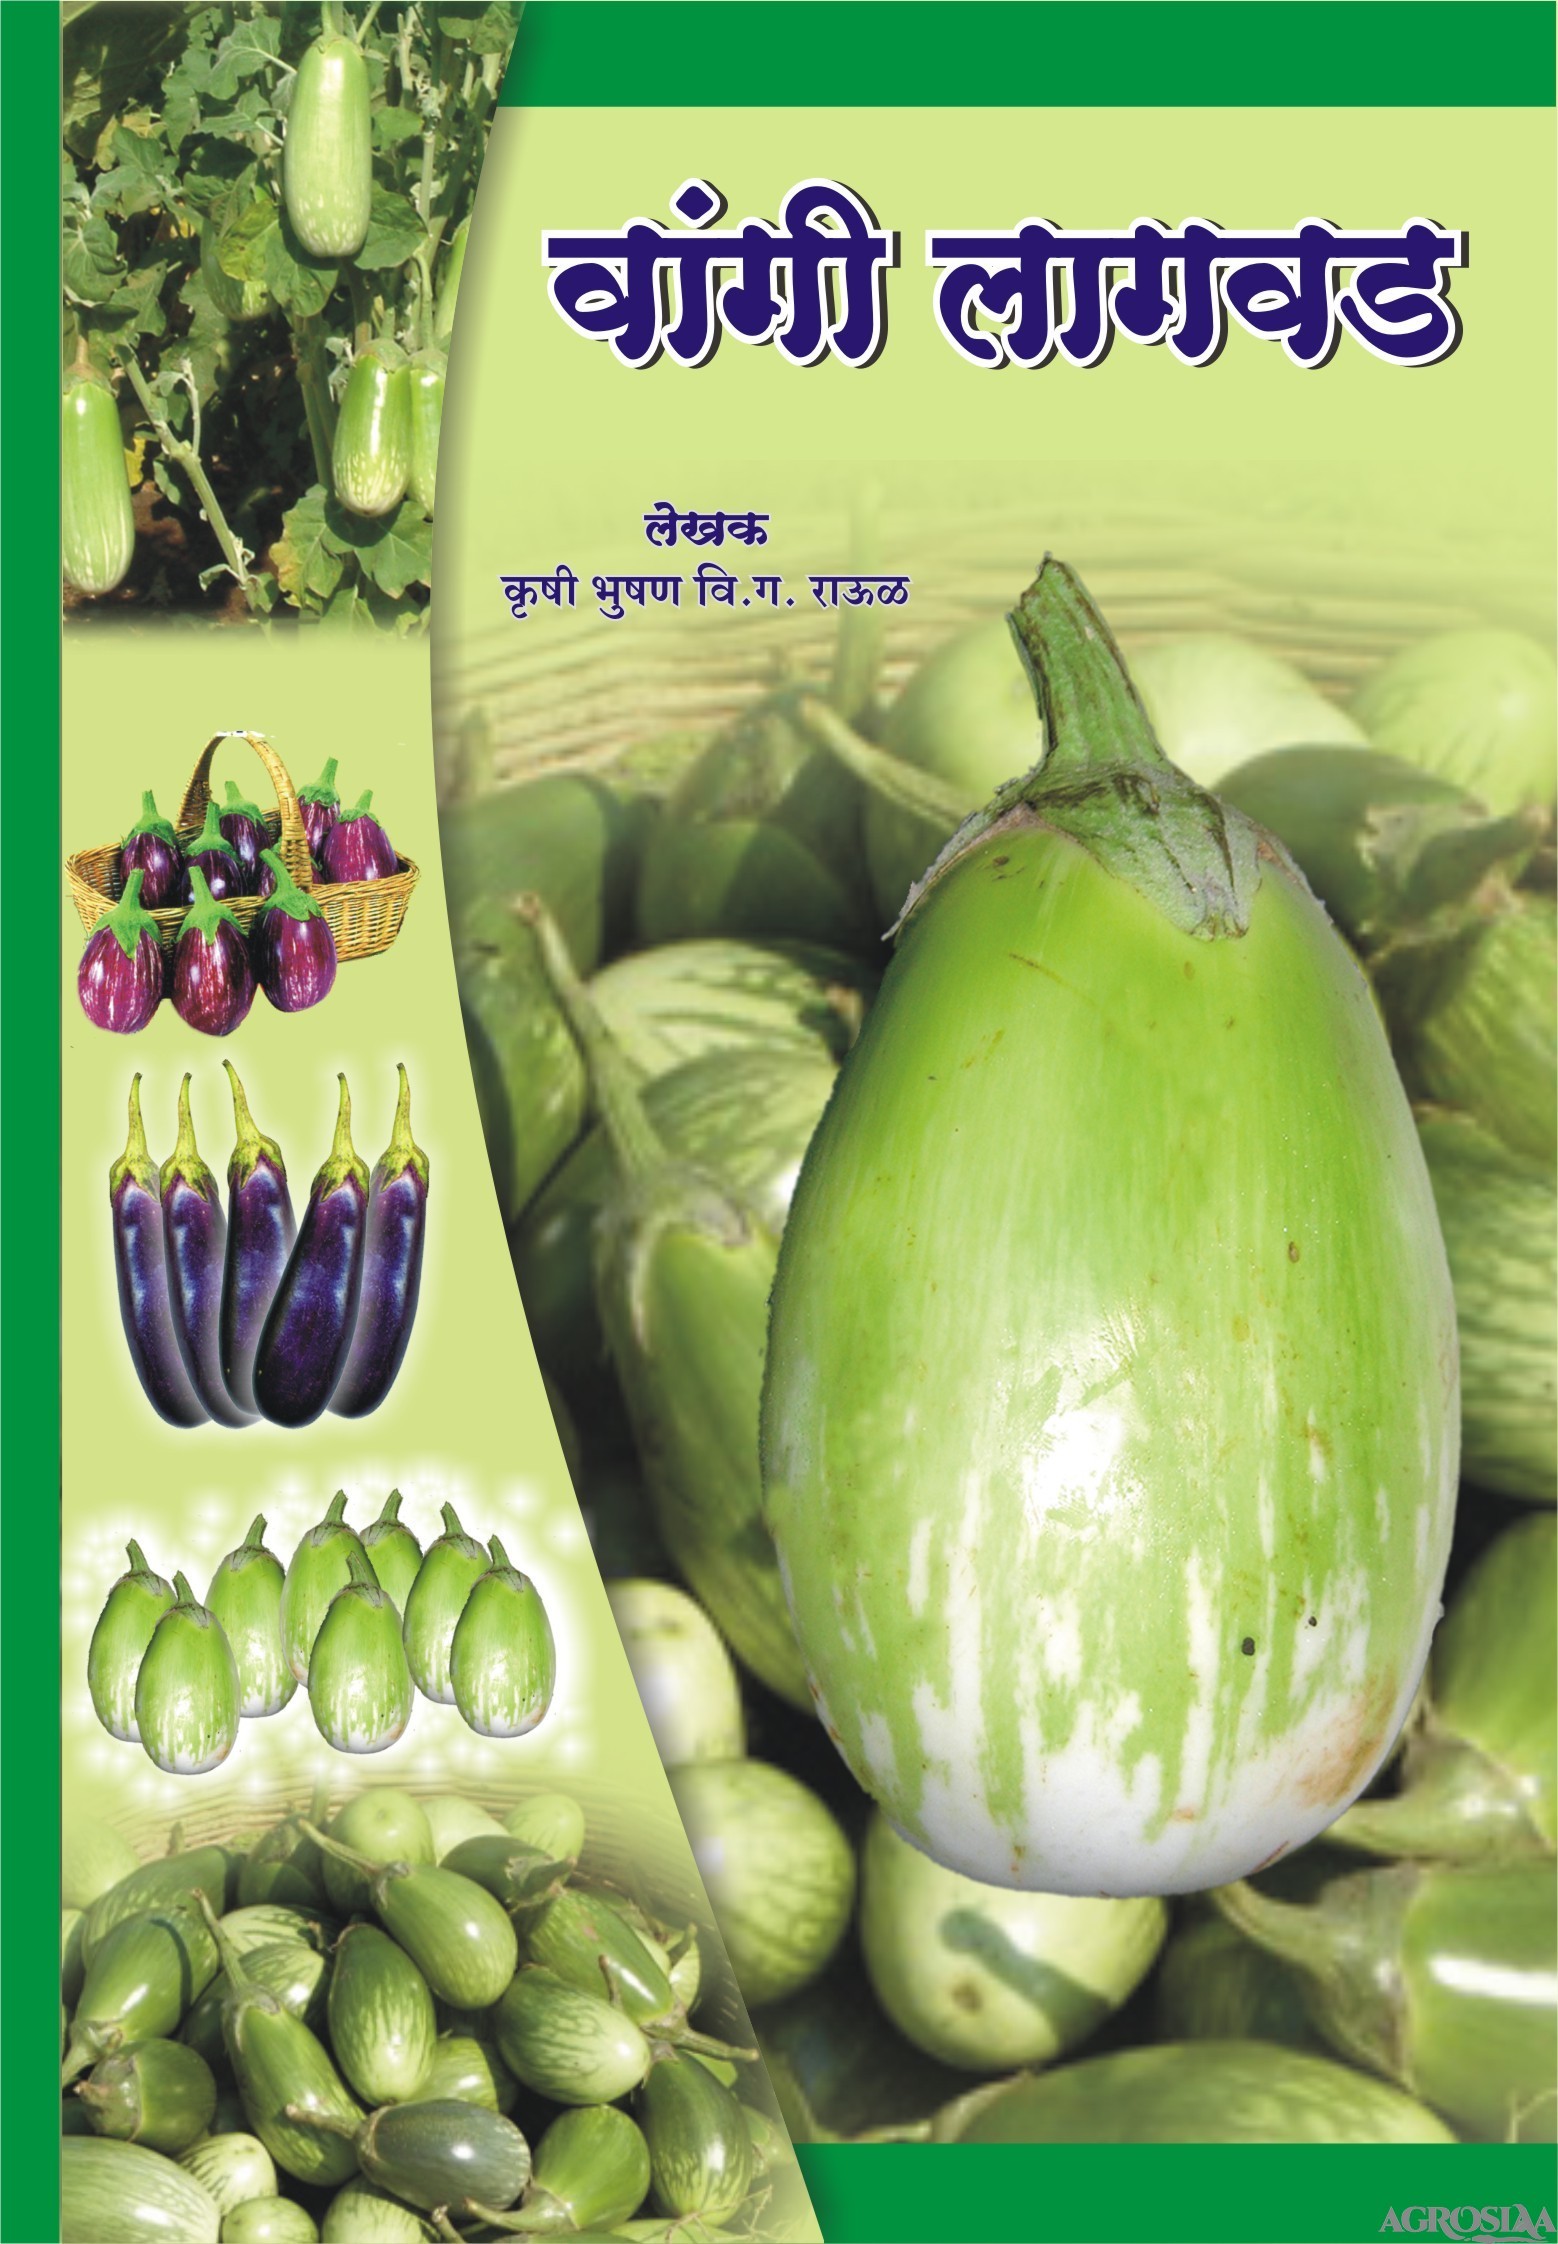 aneri vangi book in gujarati free download